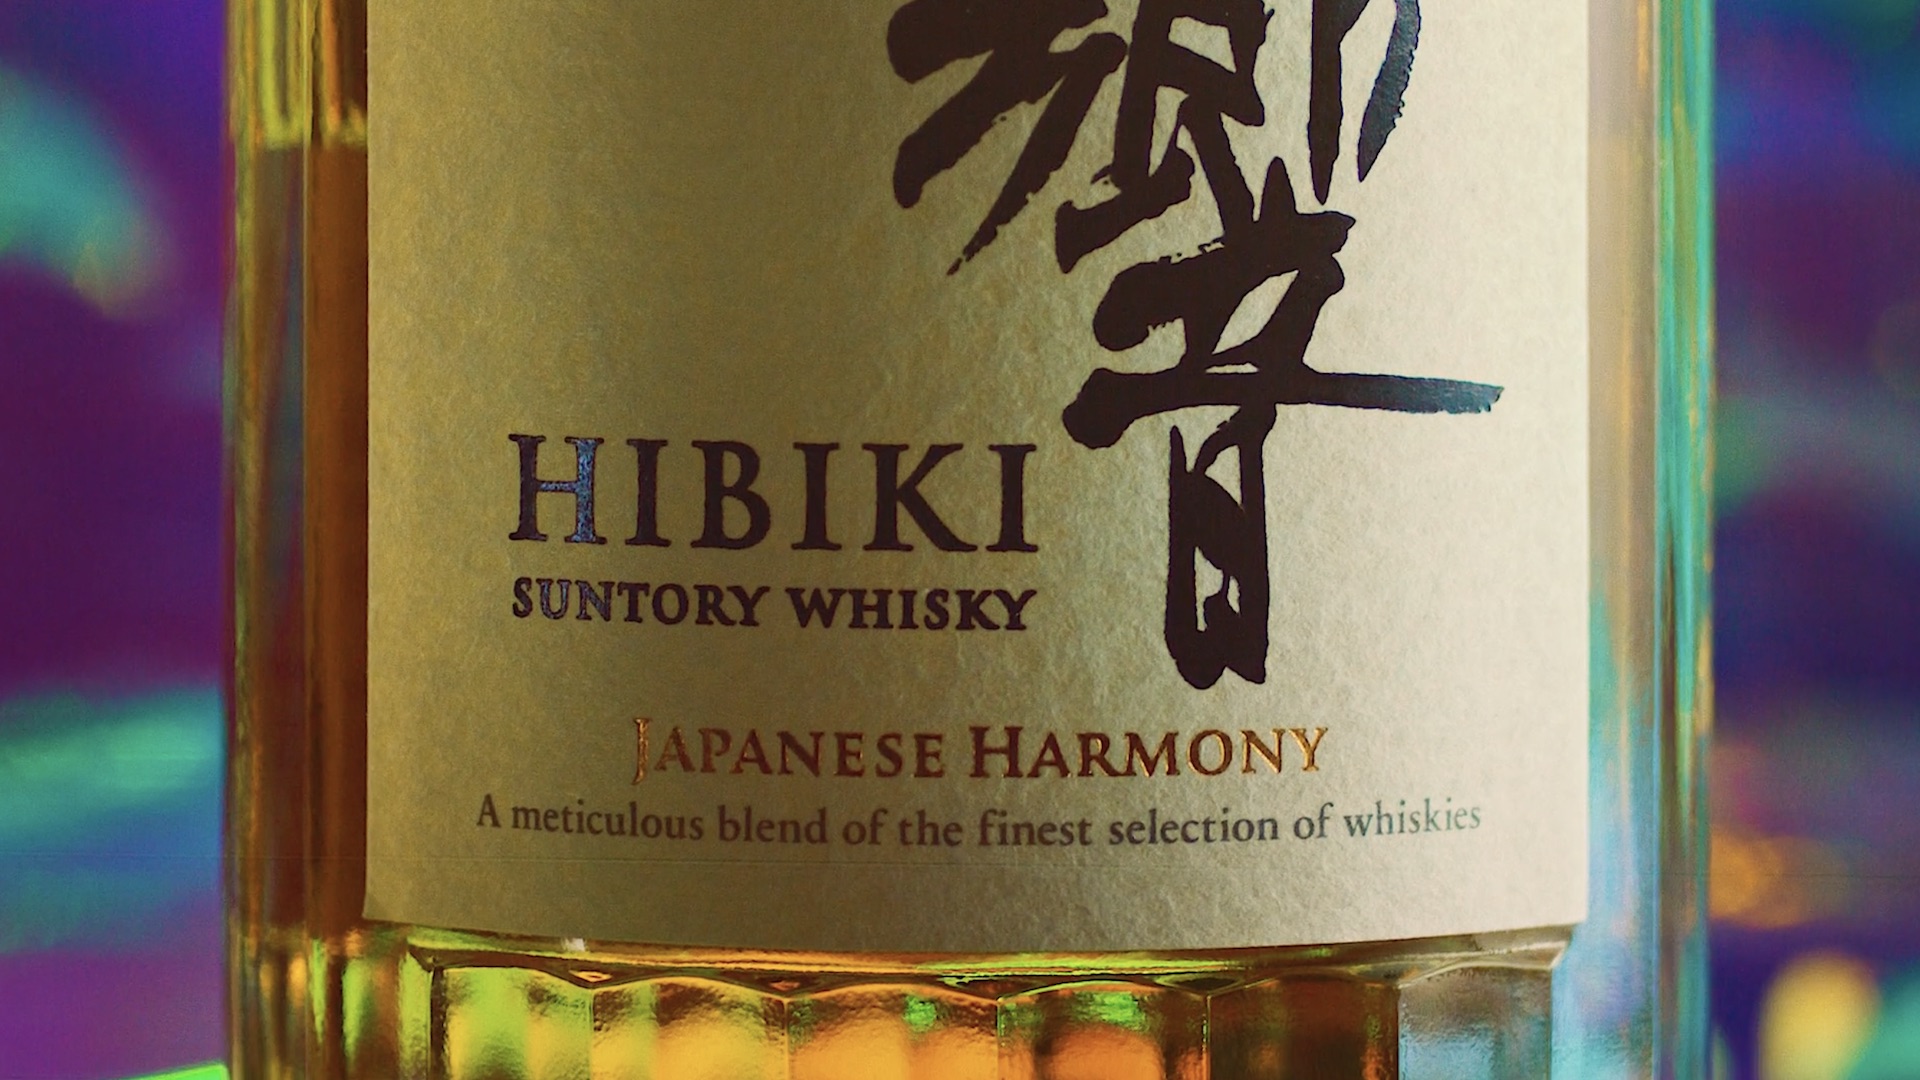 Japanese Harmony